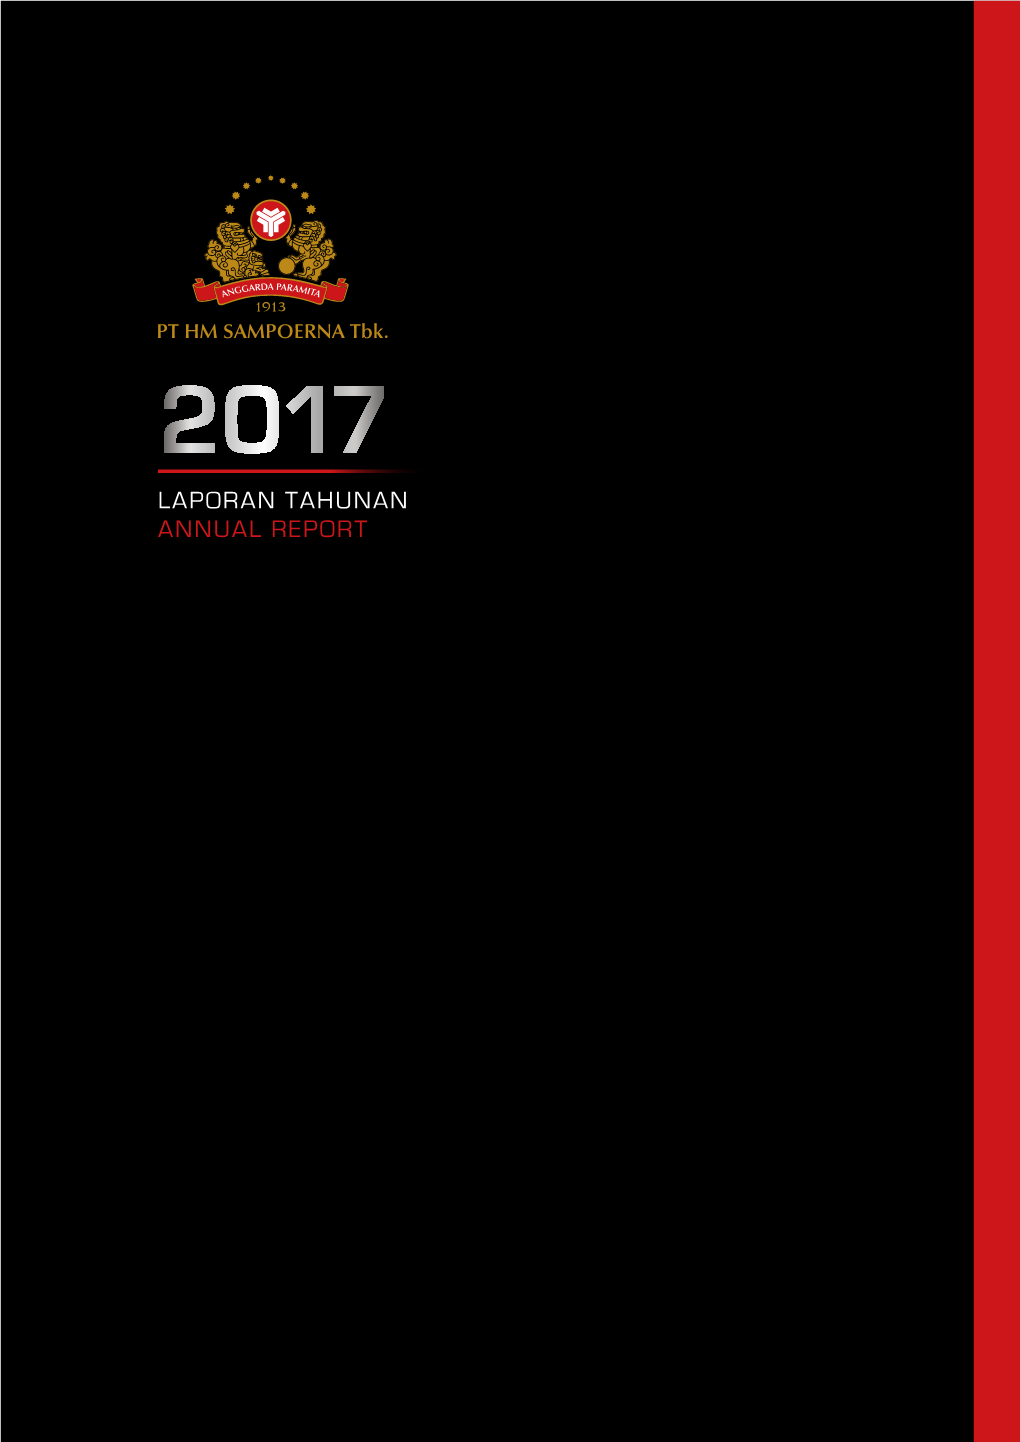 Laporan Tahunan Annual Report